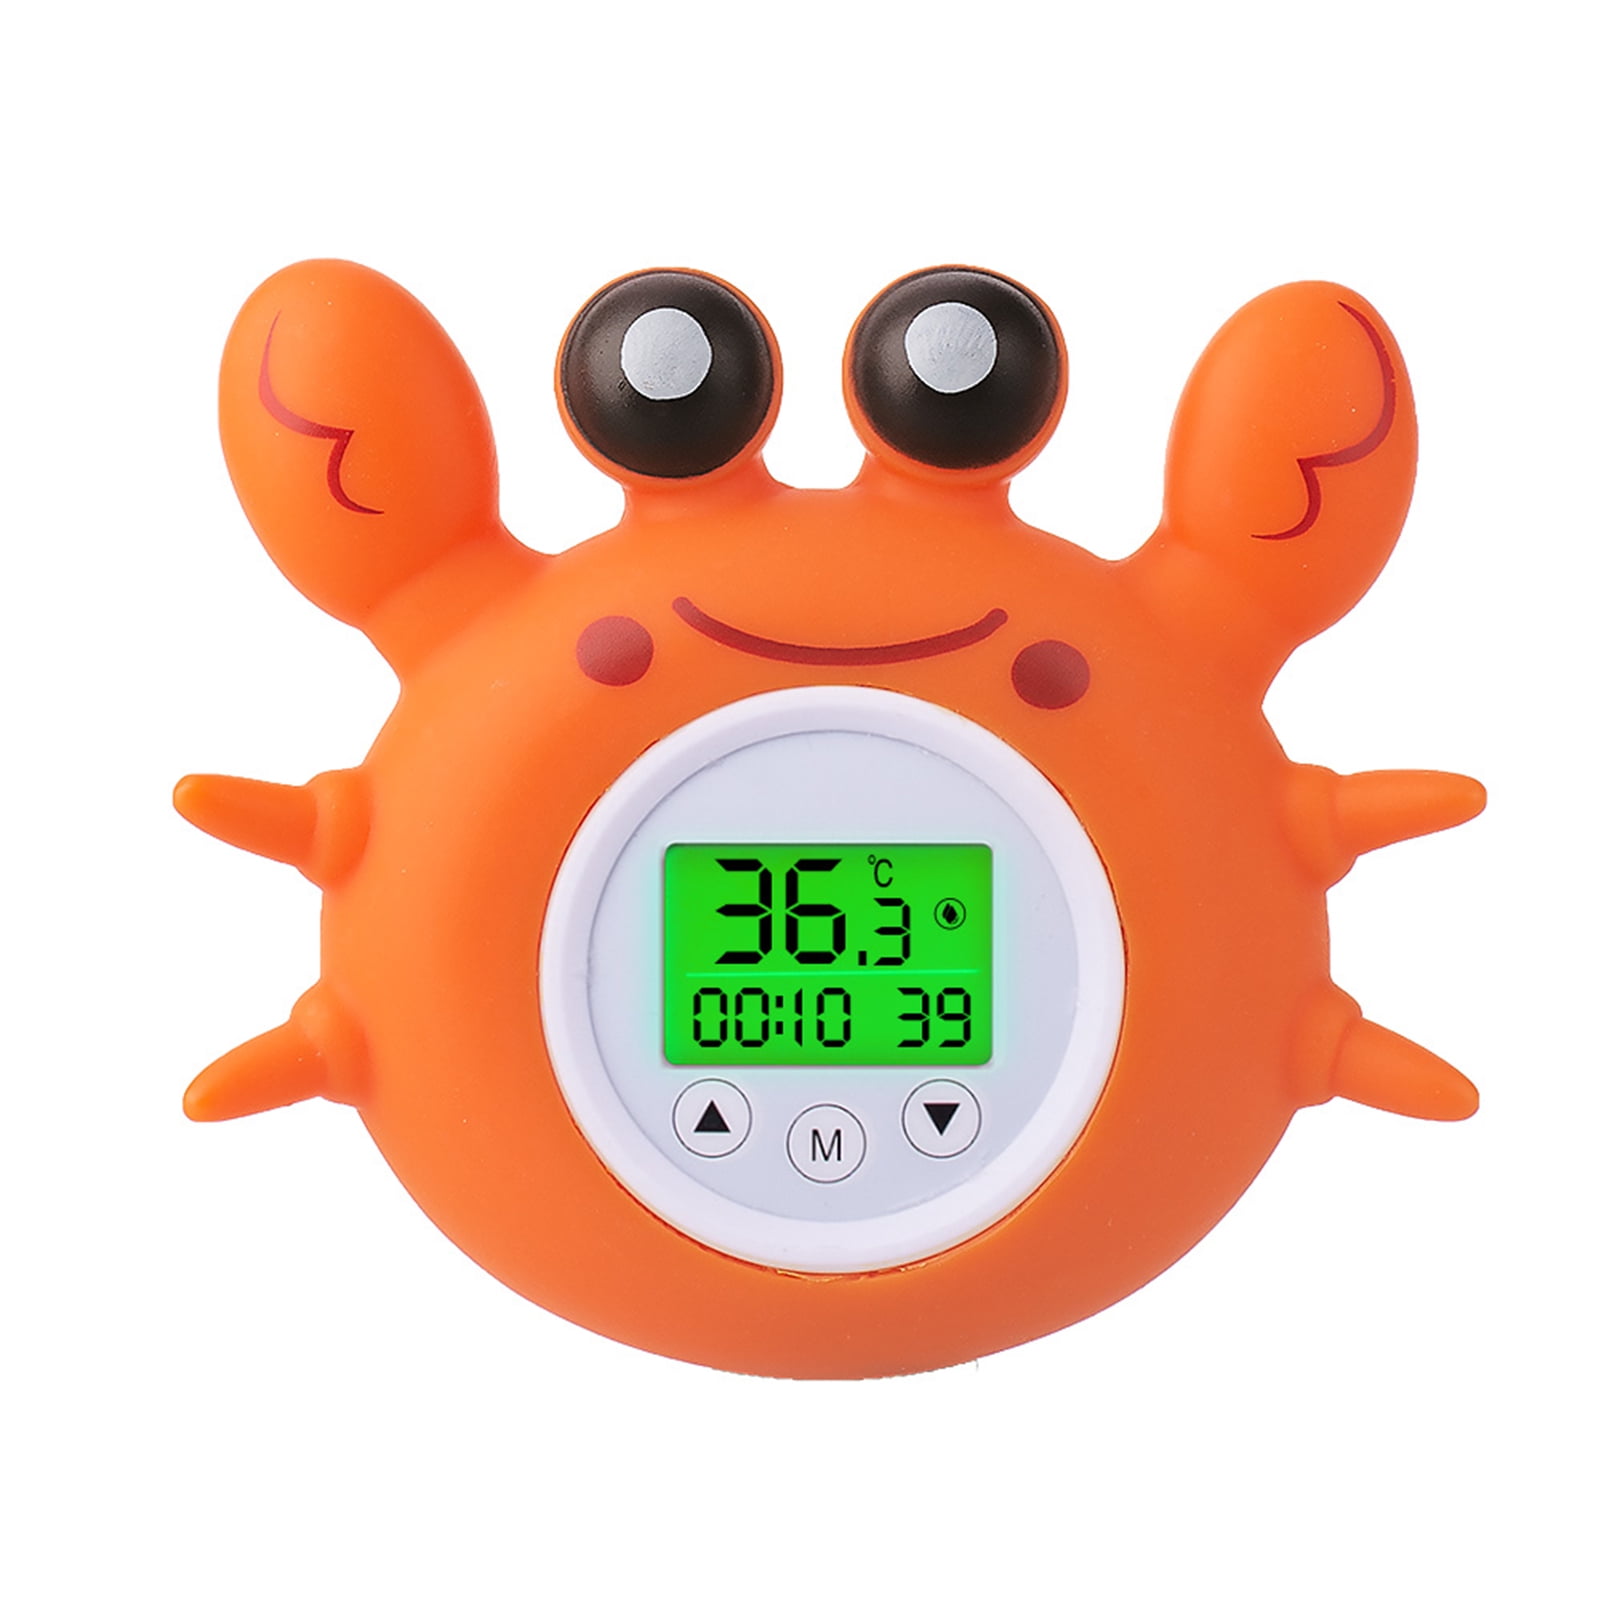 Baby bath sécurité thermomètre poisson type beau début de température jouet fun 